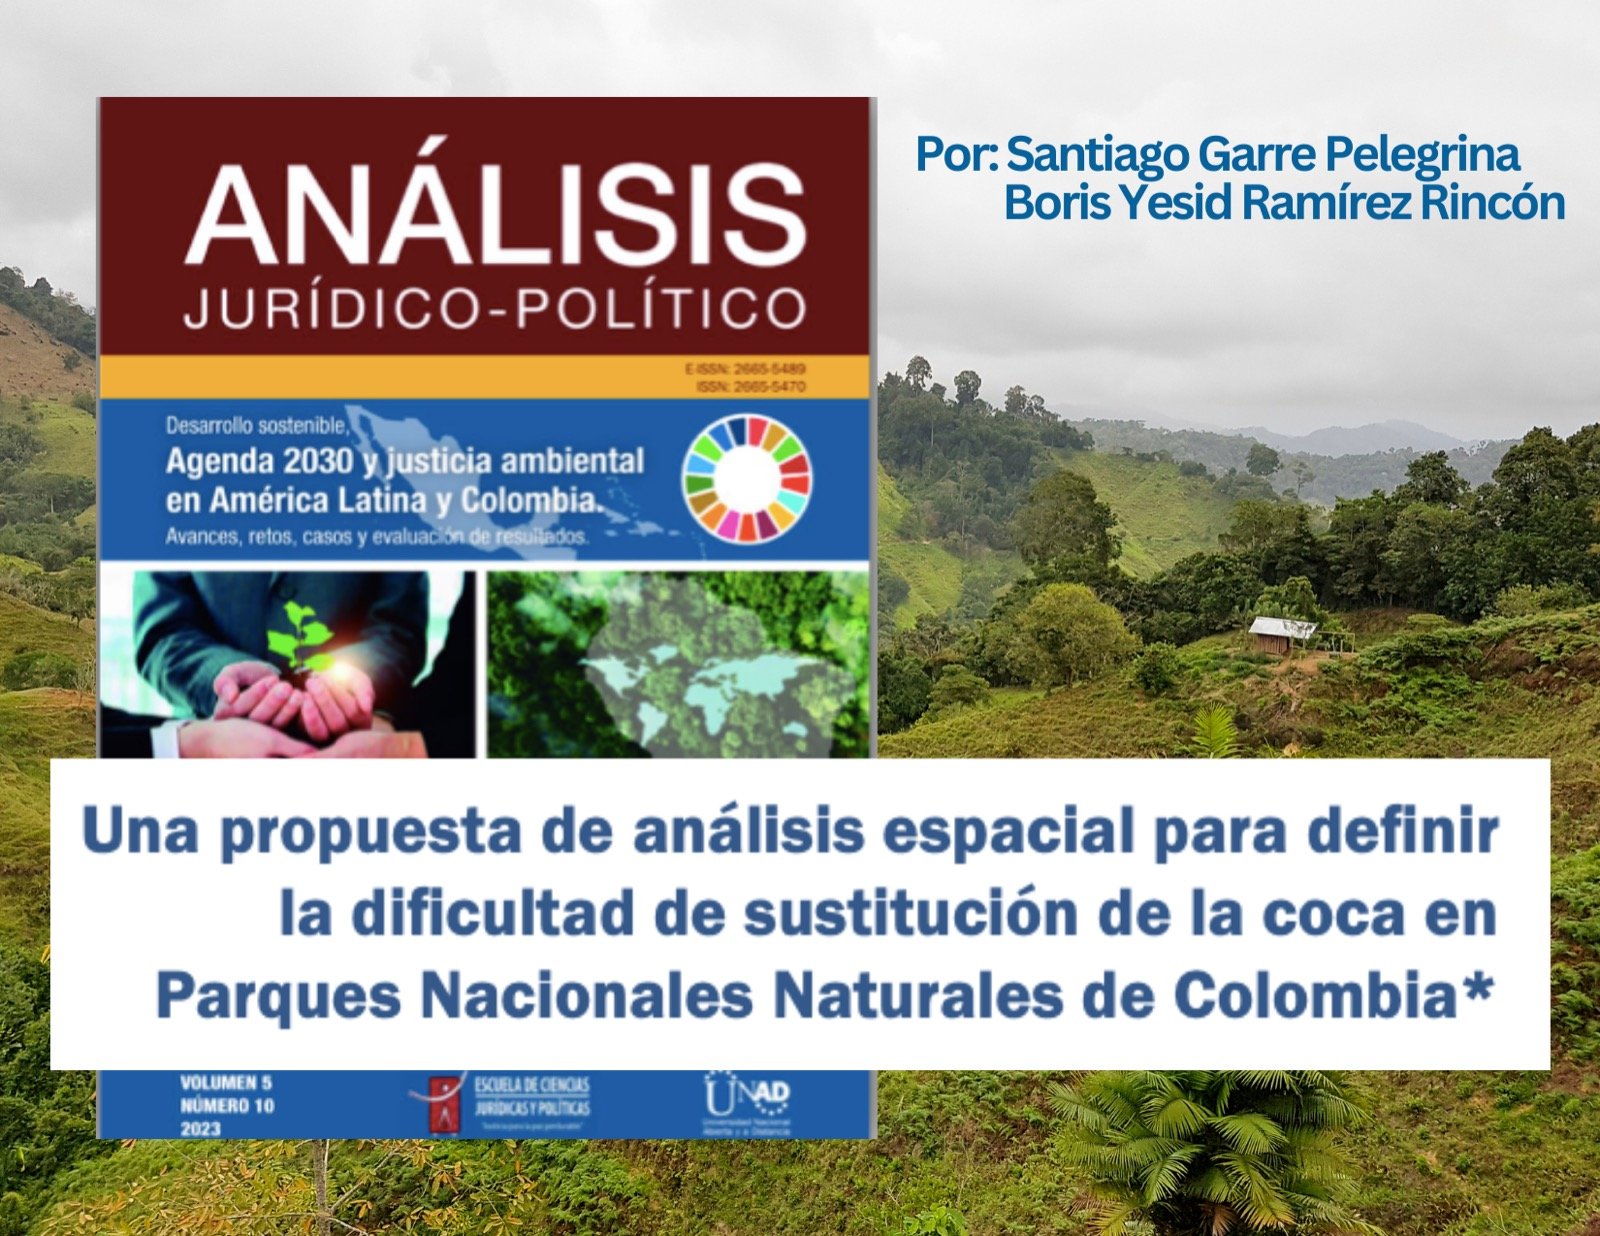 Una propuesta de análisis espacial para definir la dificultad de sustitución de la coca en Parques Nacionales Naturales de Colombia.